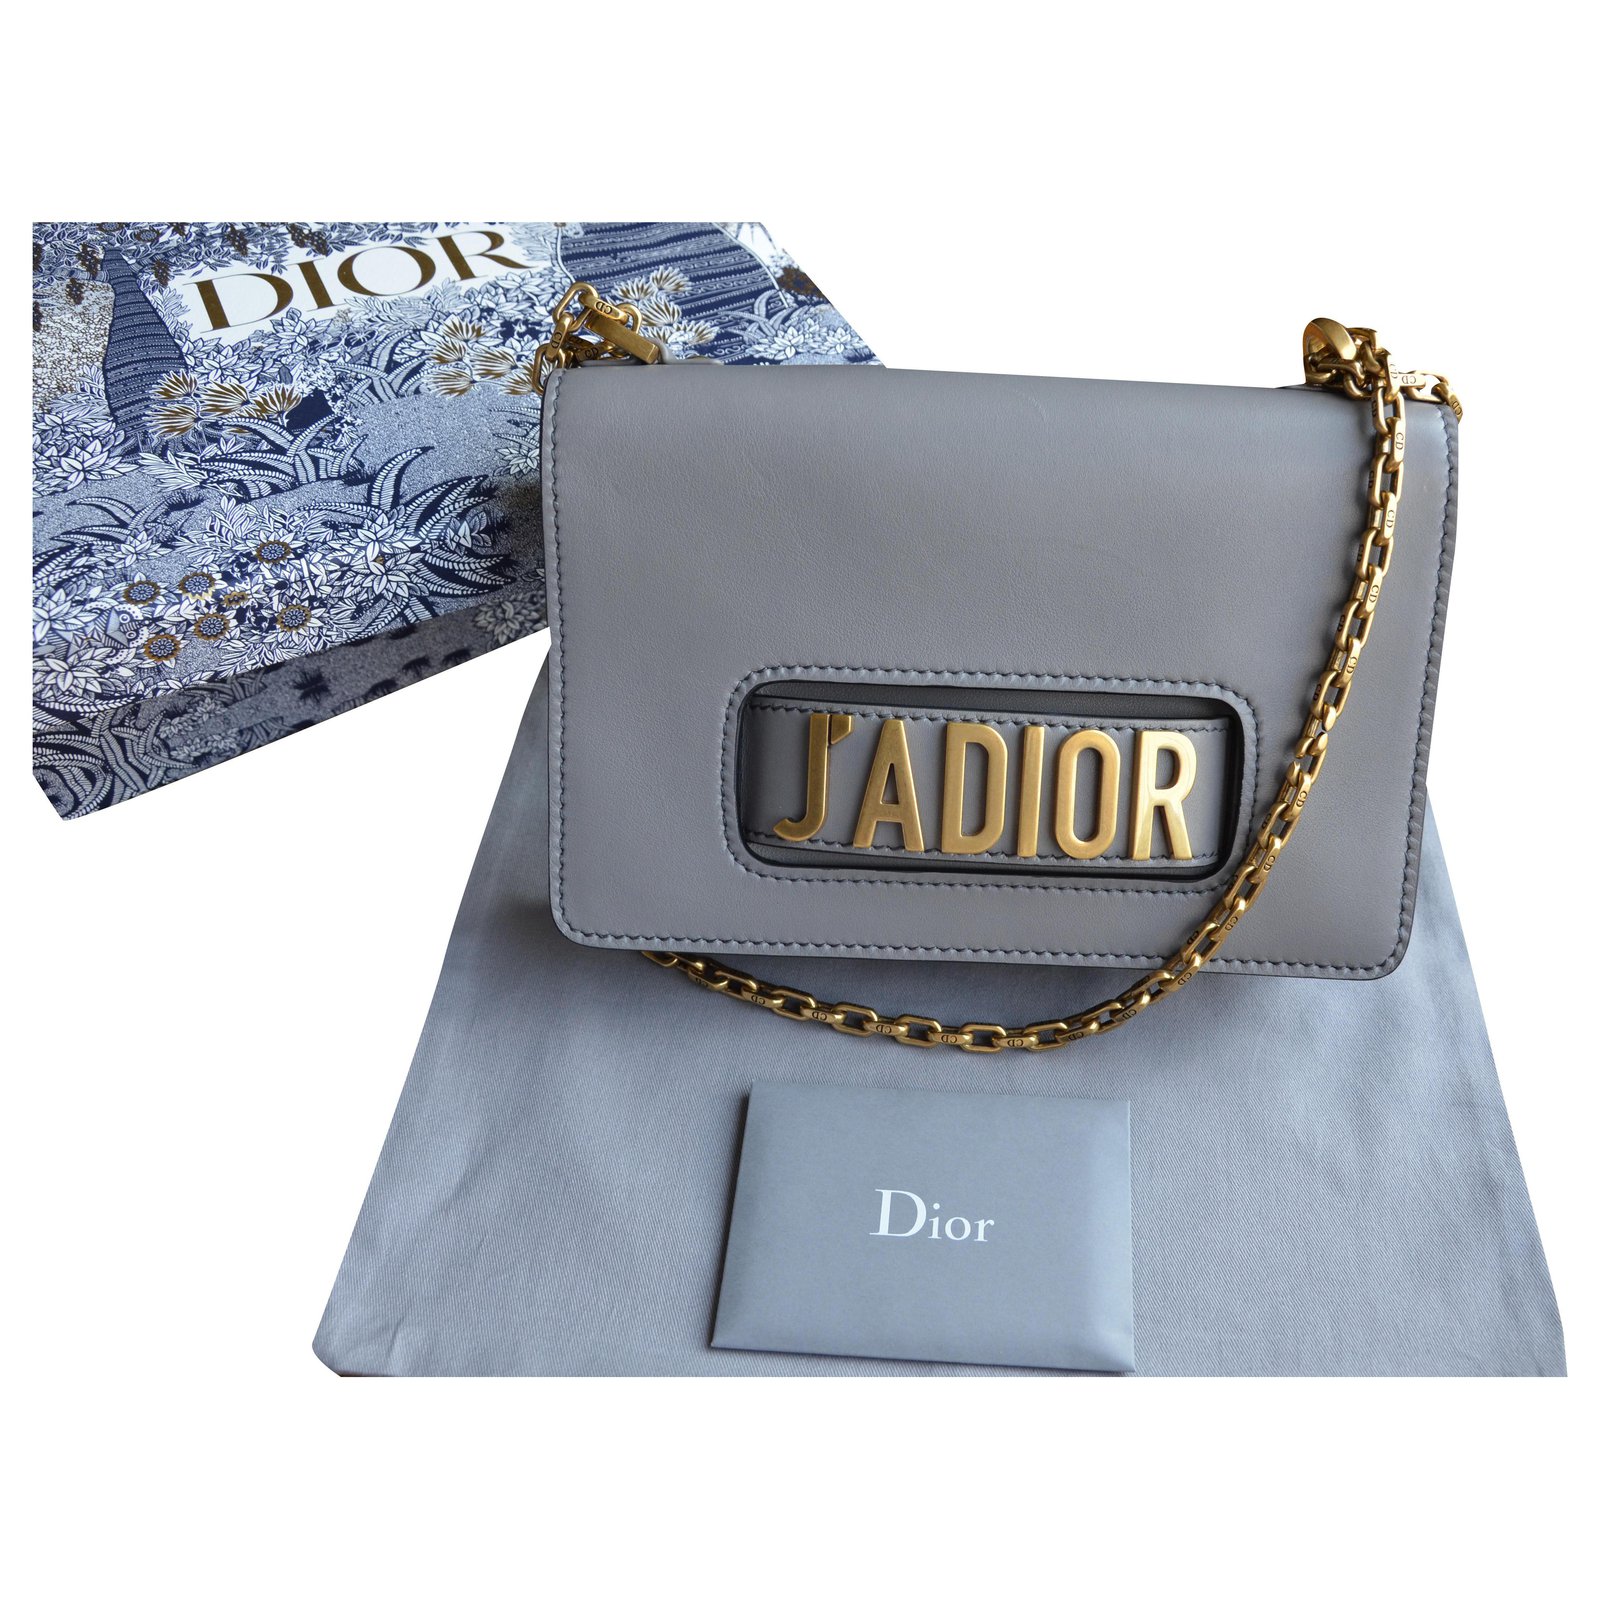 Christian Dior  Jadior Flap Bag aus Leder  Christian Dior Tasche JADIOR   mymintshopcom  Ihr Online Shop für Secondhand  Vintage  Designerkleidung  Accessoires bis zu 90 vom Neupreis das